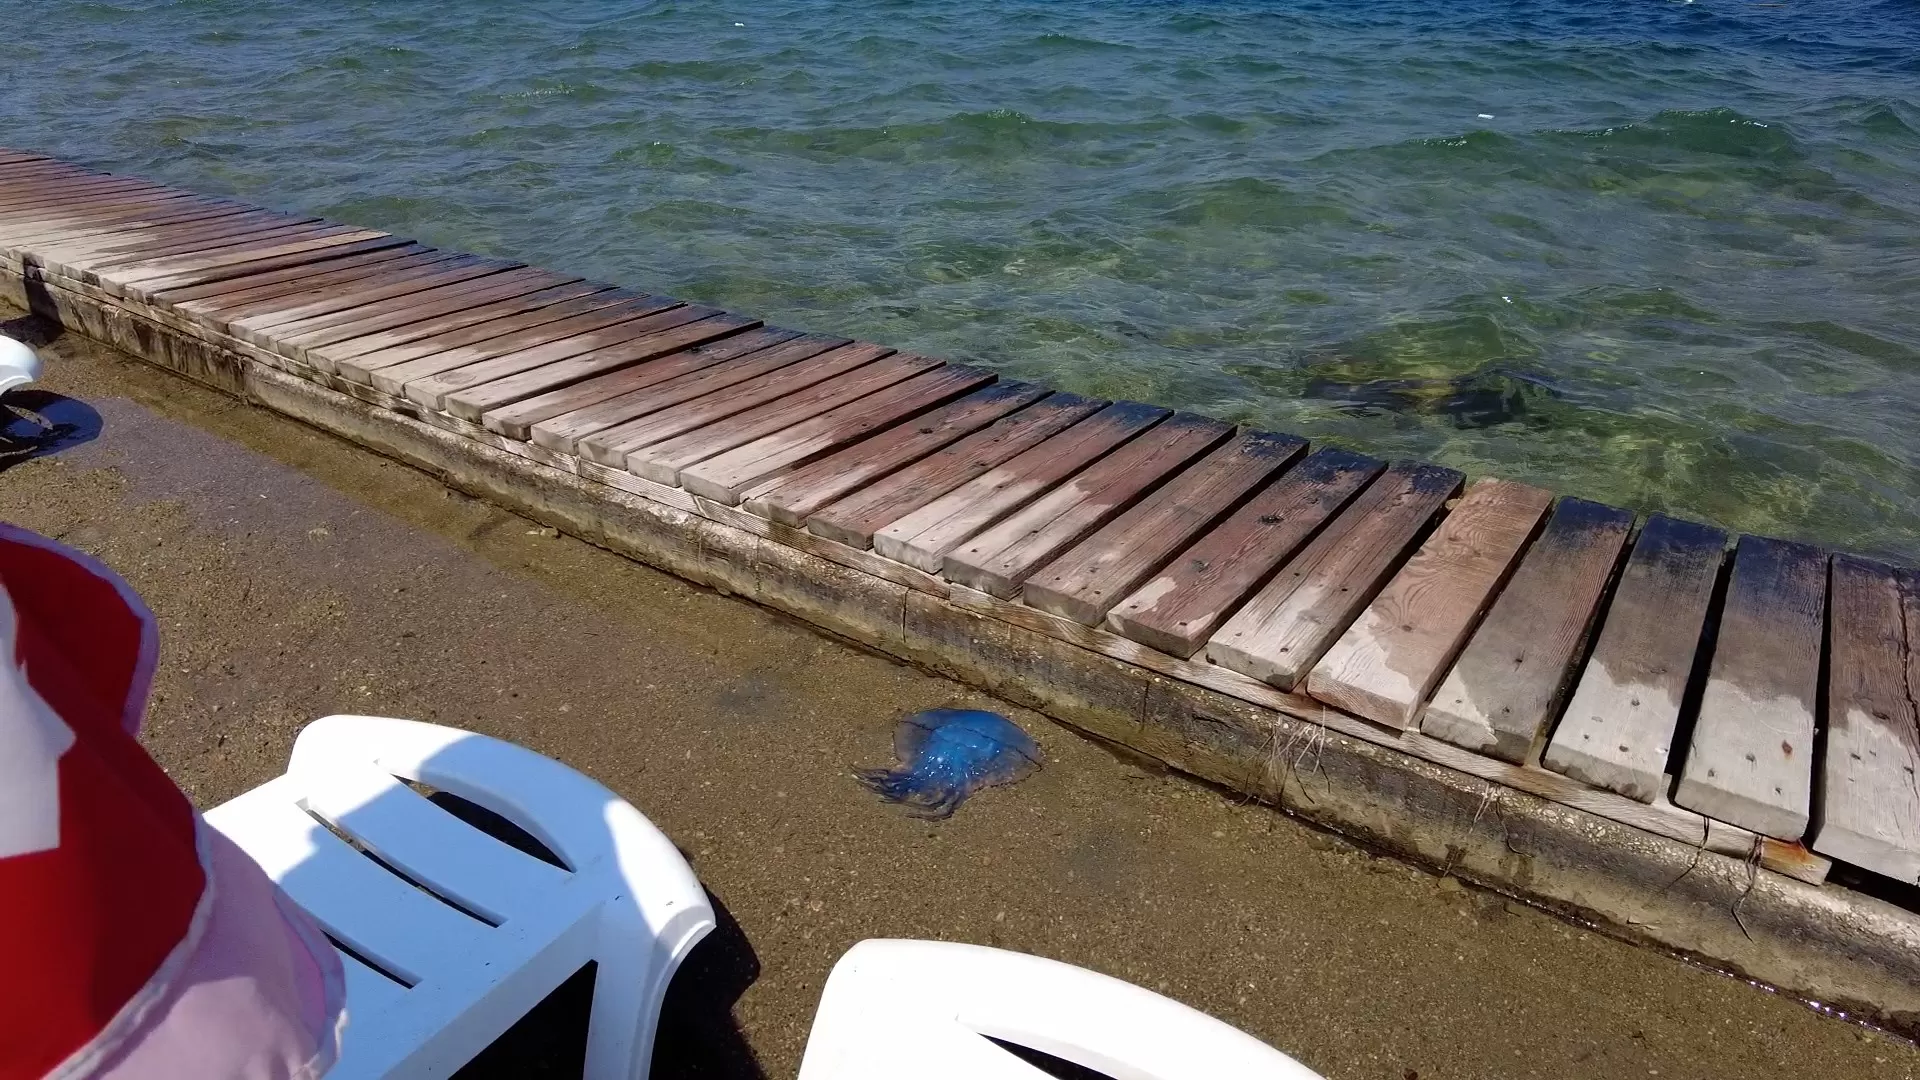 İzmir'in turistik ilçesi Foça'da, bazı sahillerde görülen denizanası istilası kentte adeta turizmi vurdu, plajlar boş kaldı.